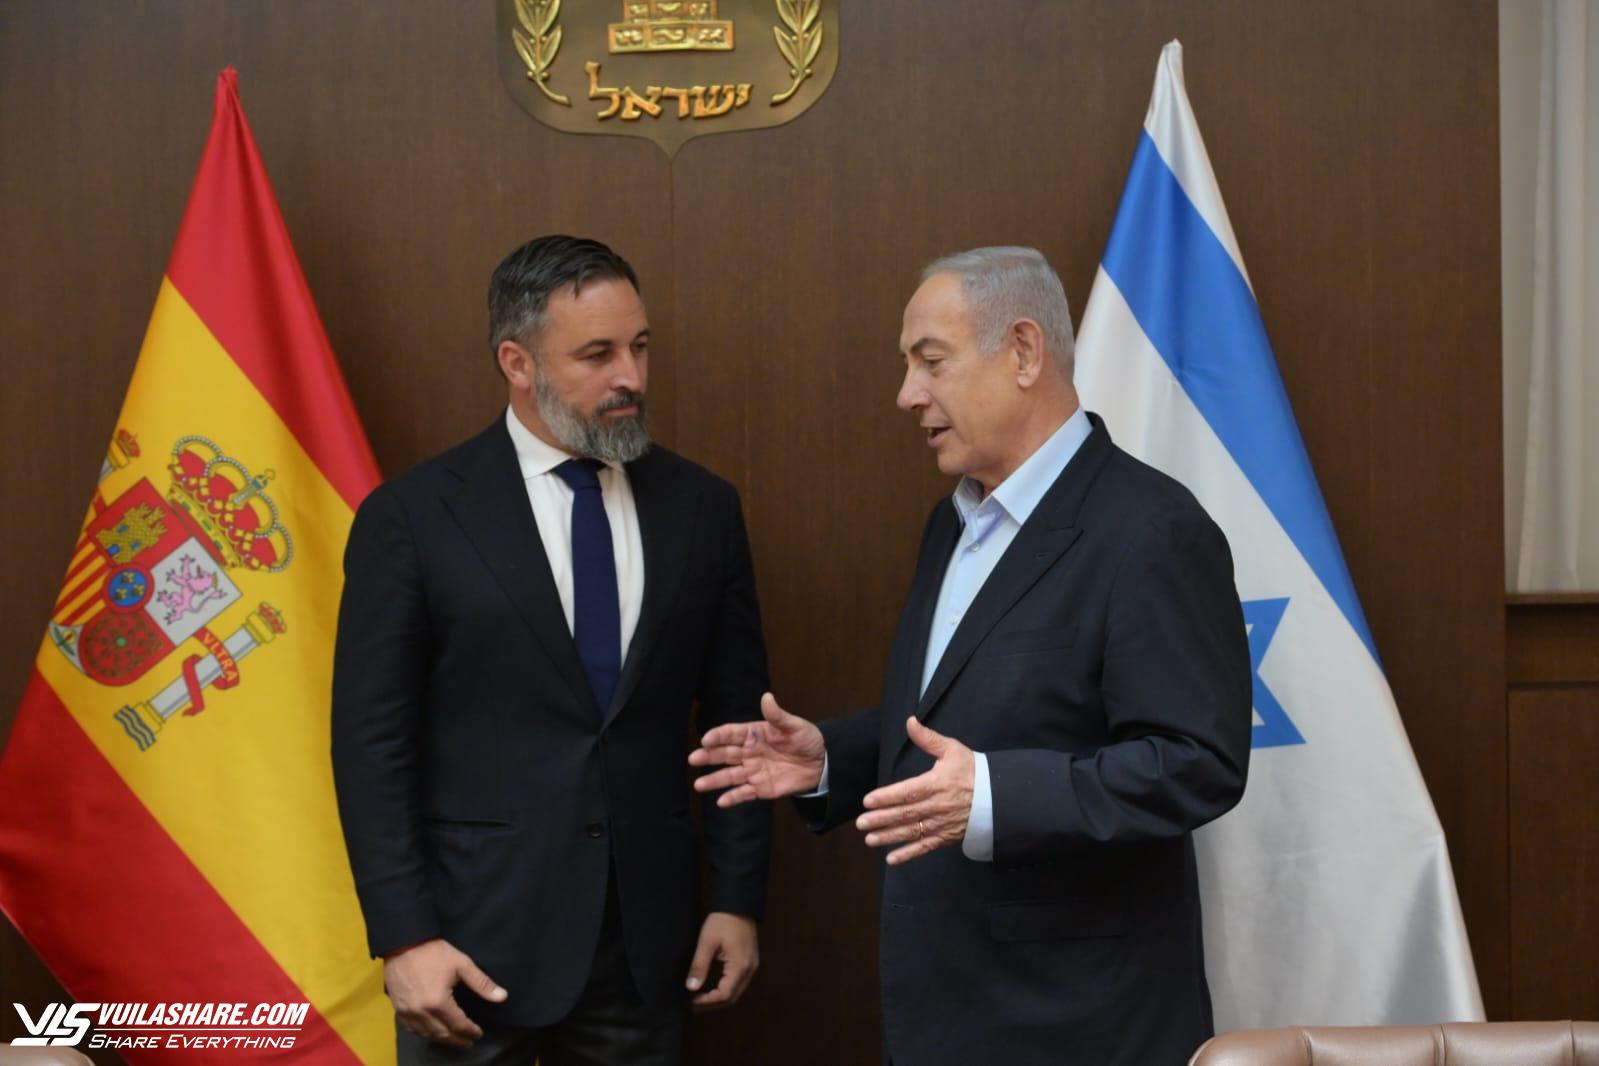 Nghị sĩ cực hữu Tây Ban Nha gây tranh cãi vì đến Israel giữa căng thẳng- Ảnh 1.